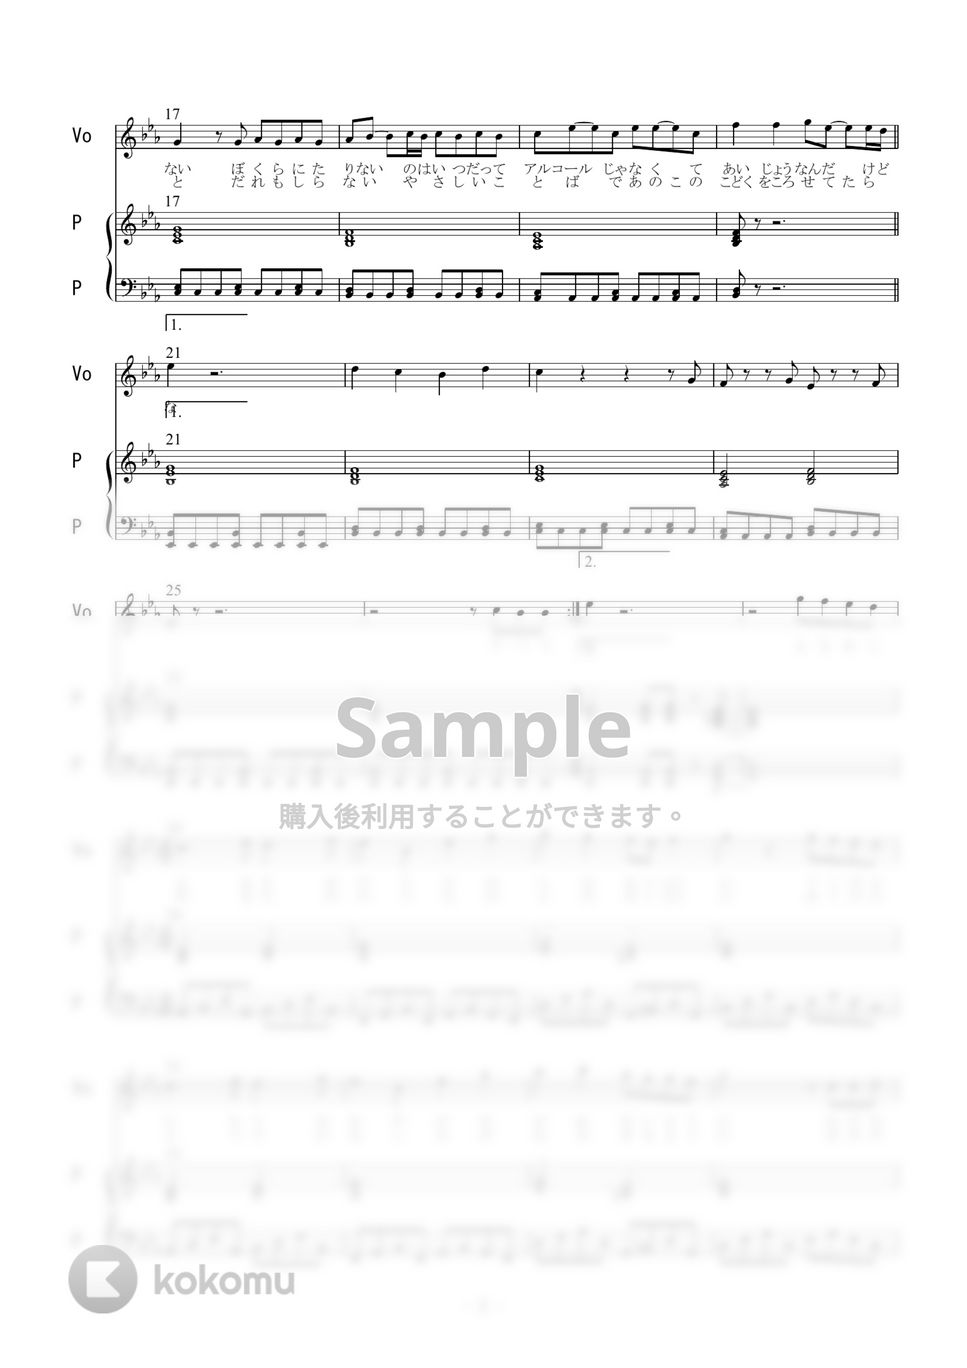 マカロニえんぴつ - ヤングアダルト (ピアノ弾き語り) by 二次元楽譜製作所